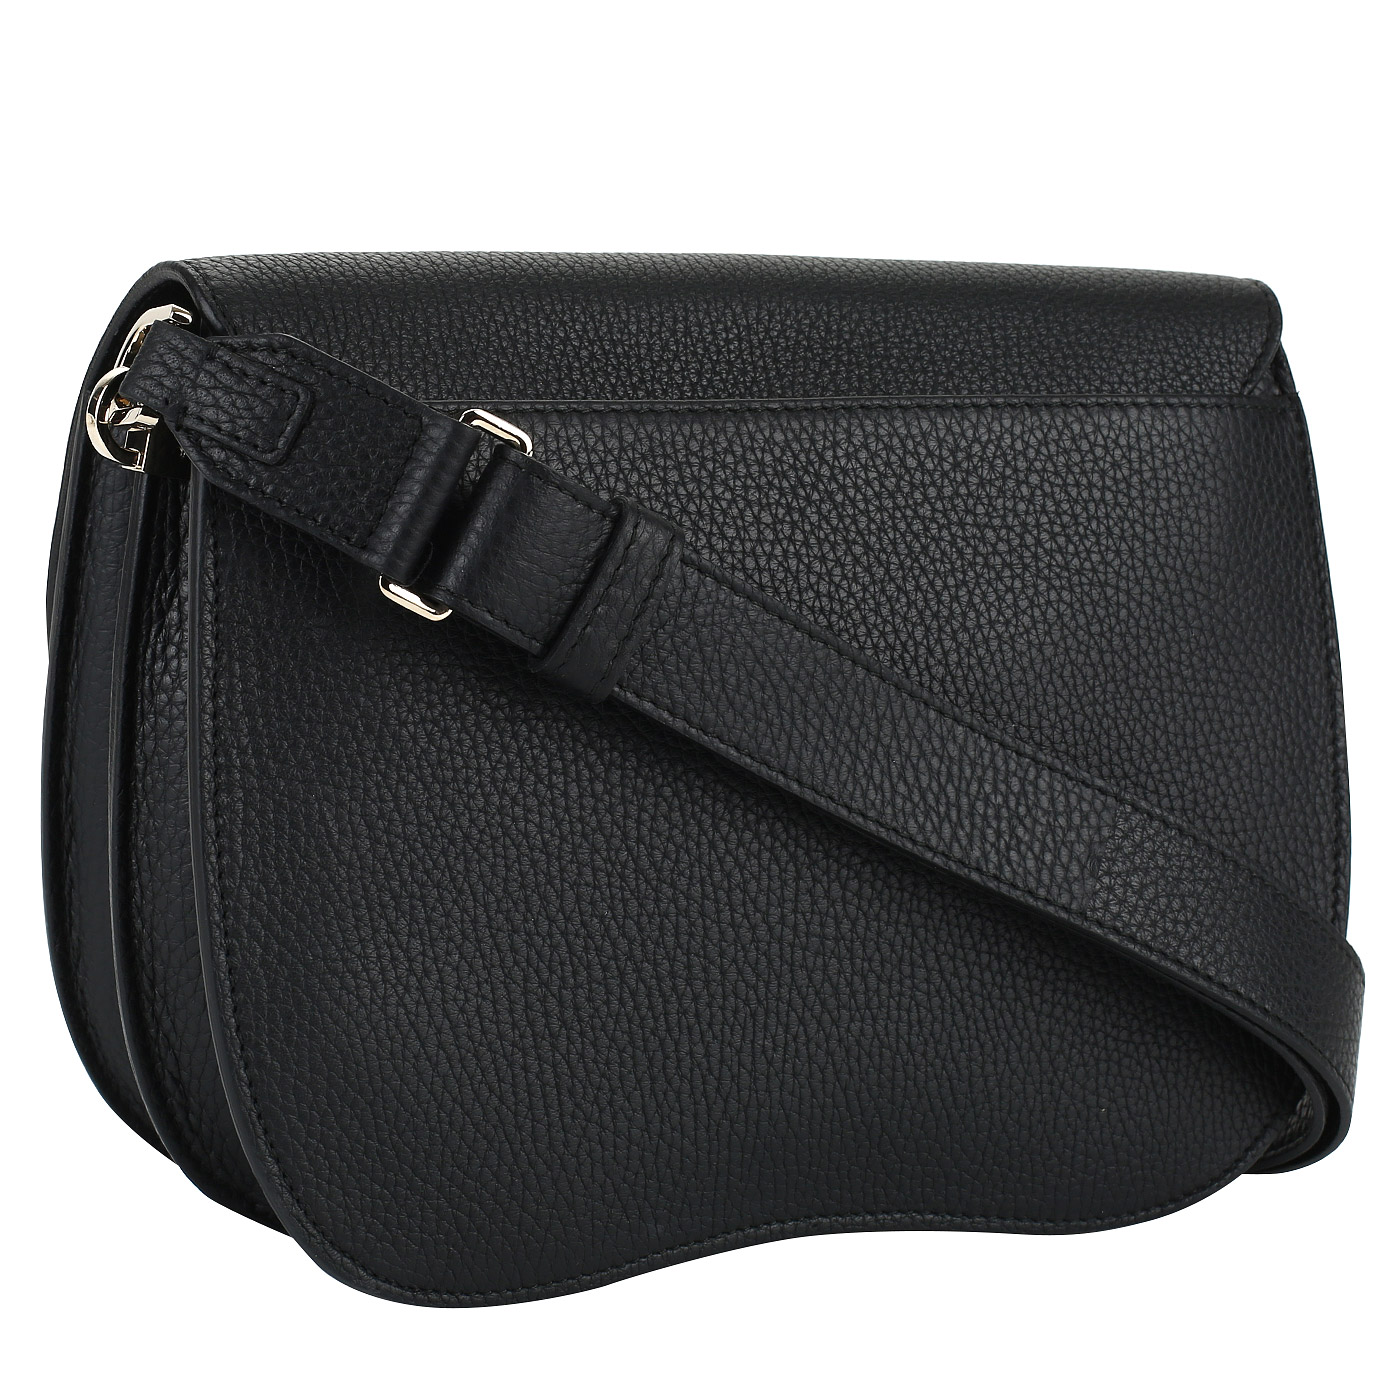 Черная женская кожаная сумочка Furla Ducale